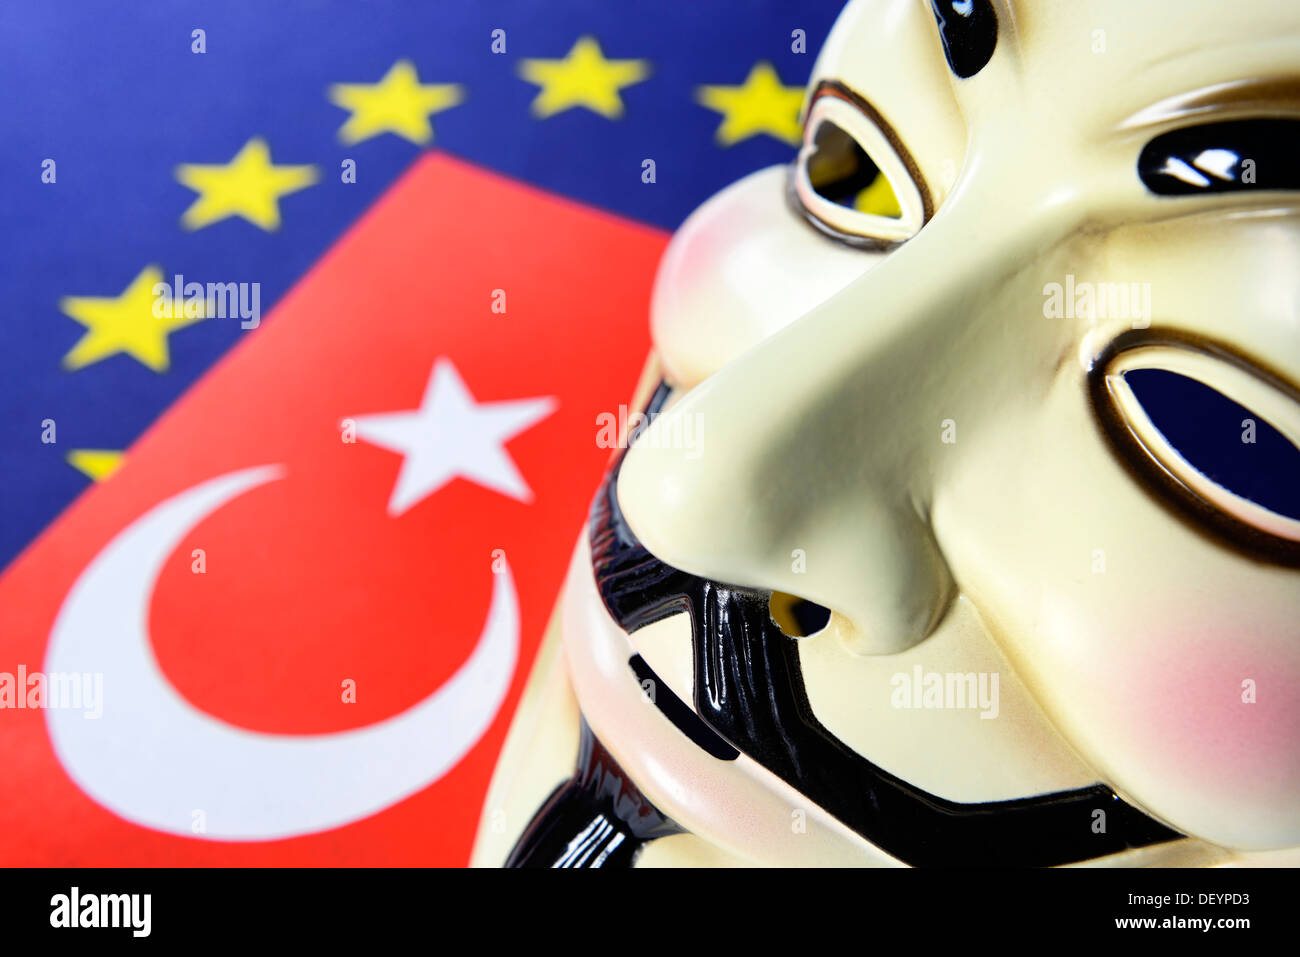 Turquía bandera, la bandera de la UE y ocupar la máscara, protestas civiles en Turquía, Türkei-Fahne, UE-Fahne und Occupy-Maske, Bürgerproteste in der T Foto de stock